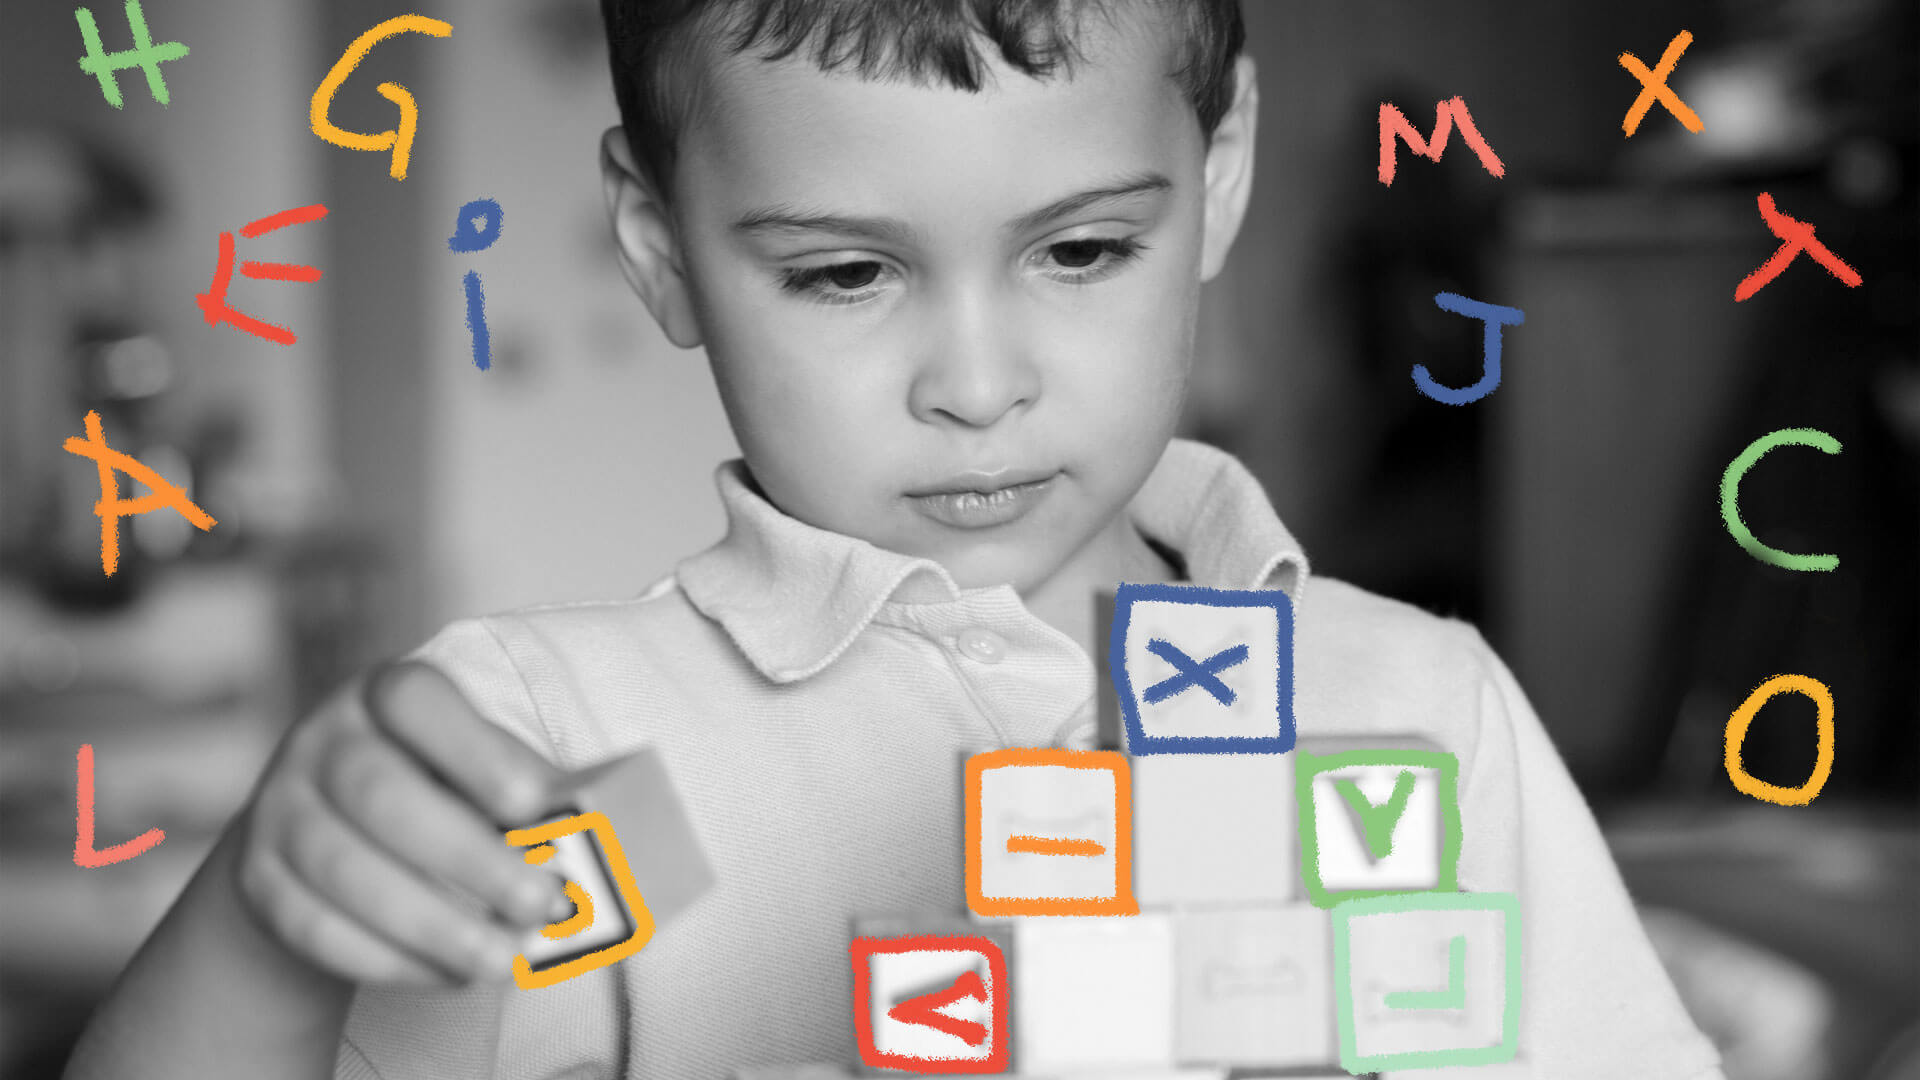 Menino concentrado em um jogo brinca montando as letras do alfabeto. A foto é em preto e branco.